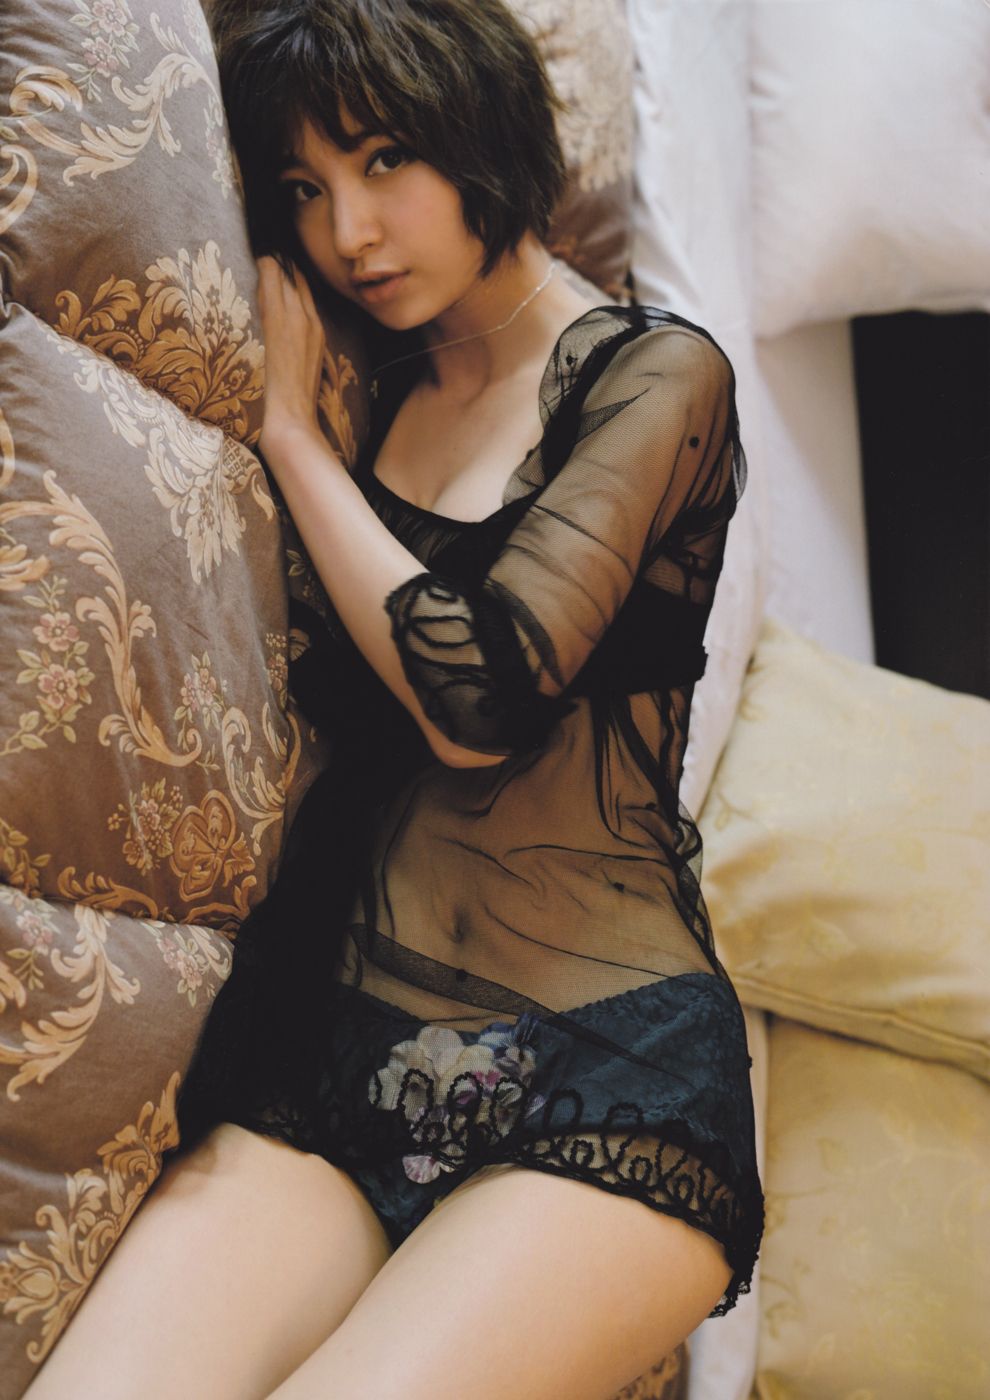 Mariko Shinoda Sexy and Hottest Photos , Latest Pics